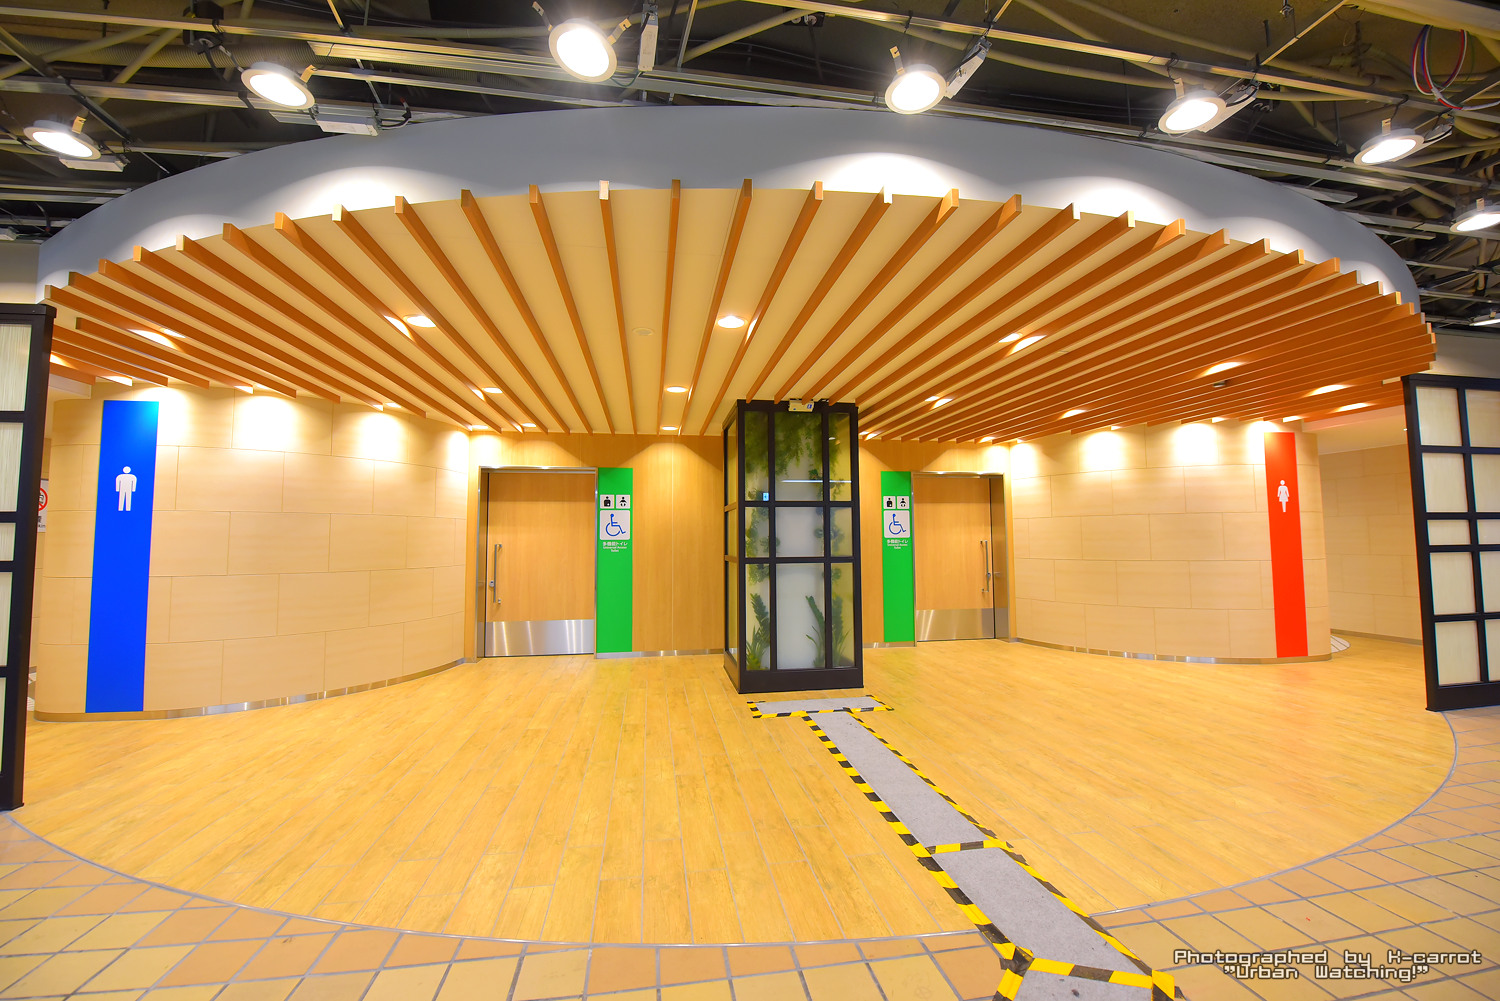 地下鉄東山線「千種」駅のトイレが名古屋の地下鉄史上最も豪華になっていると話題に アーバンウォッチング！